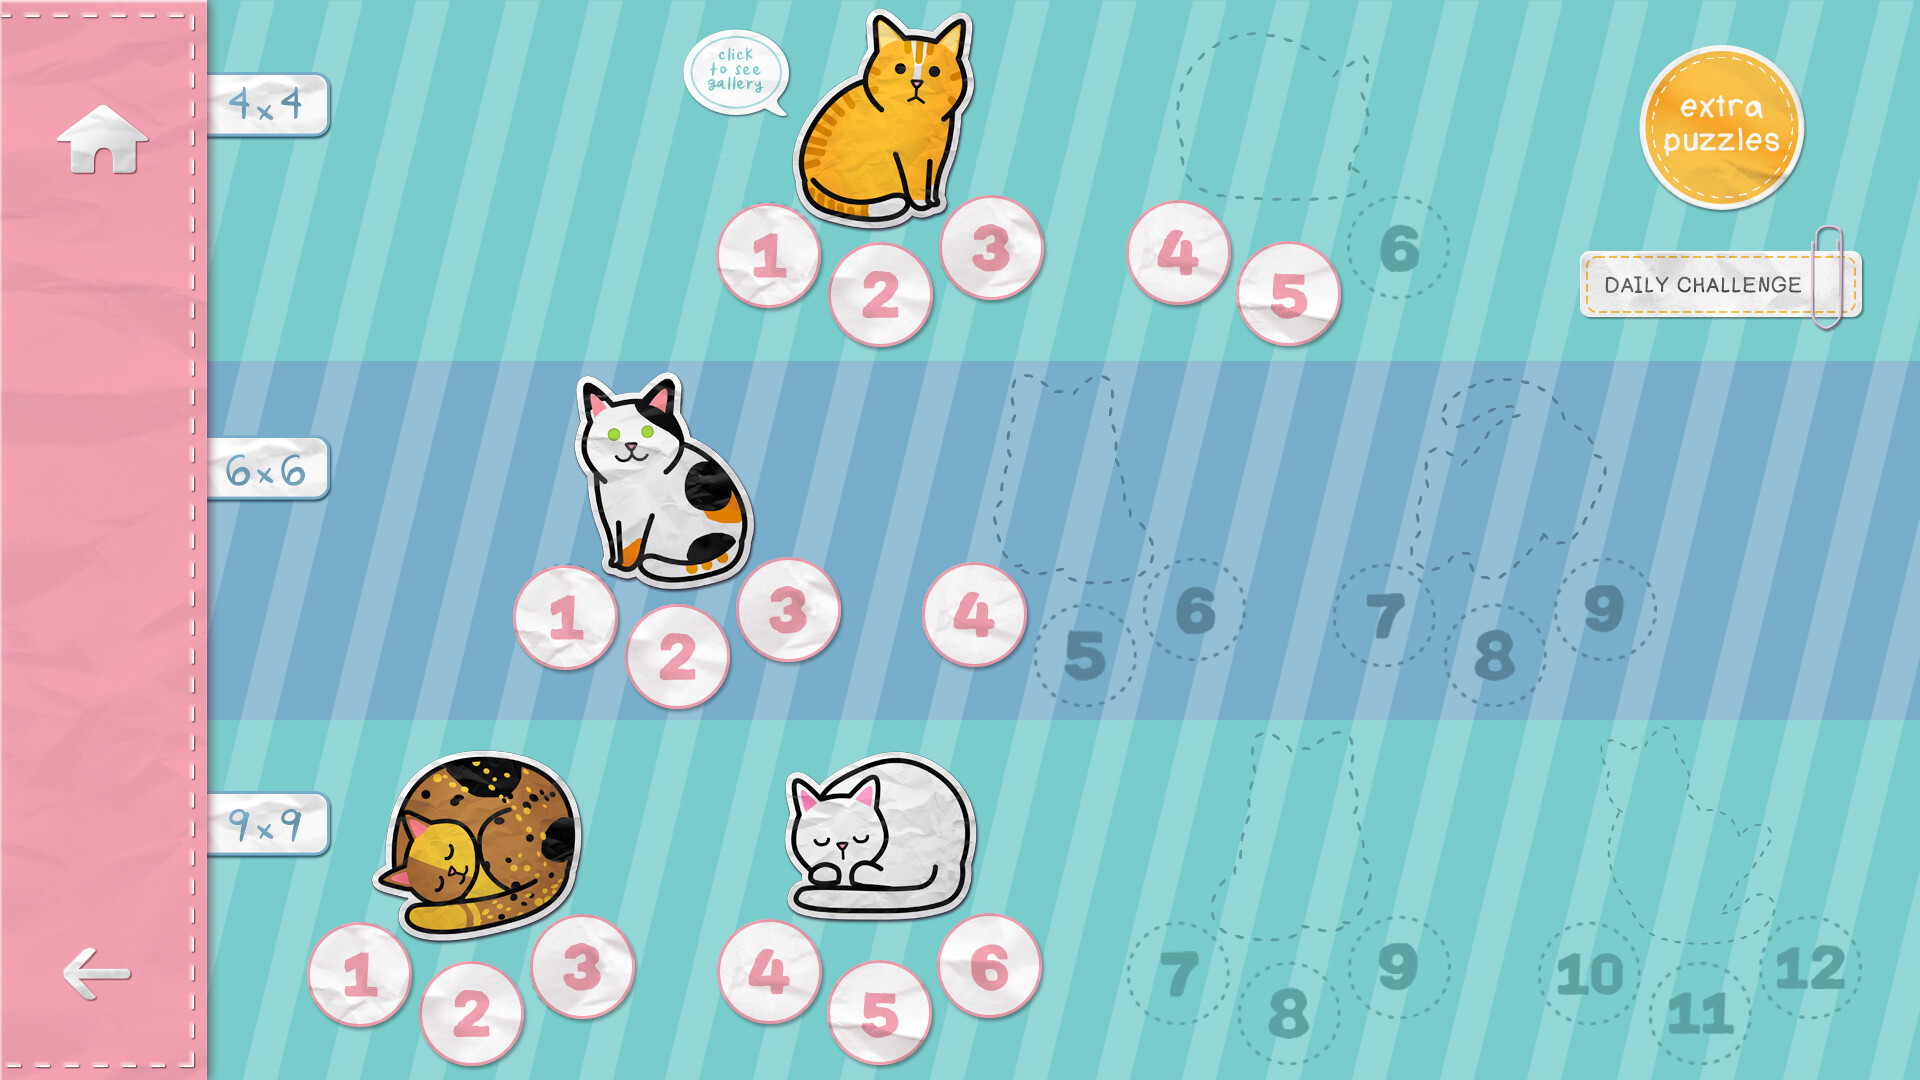 Jogo educativo de sudoku com gatos cinzentos fofos